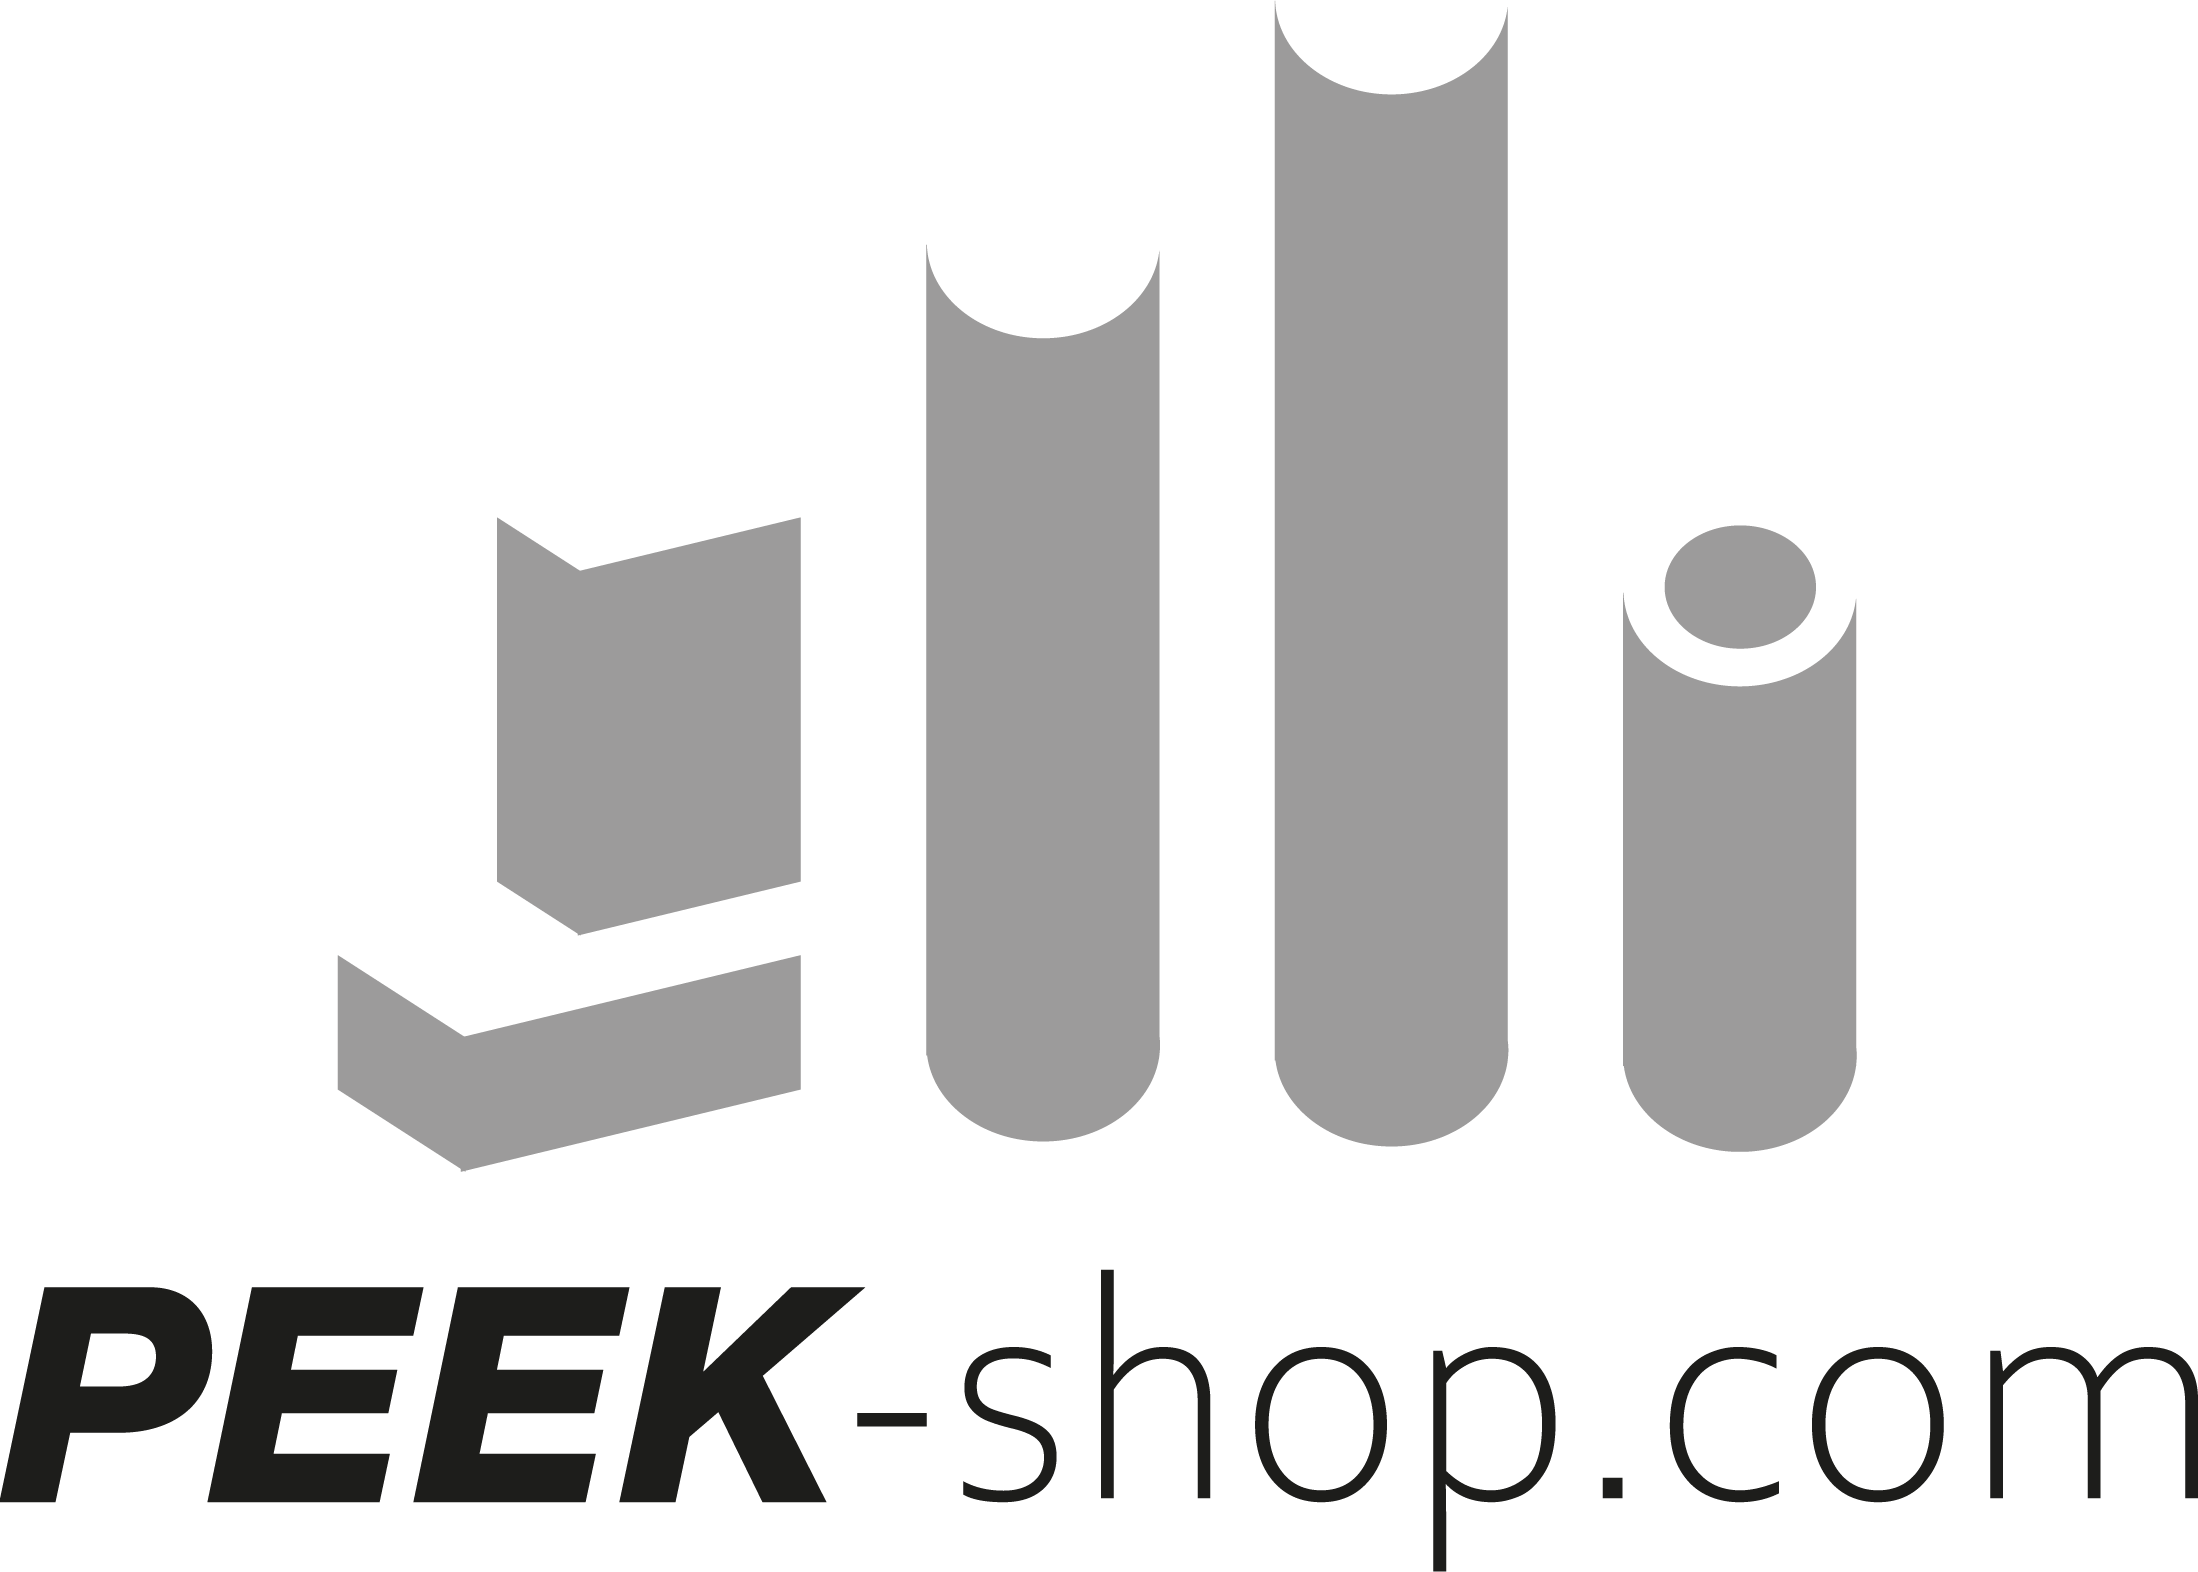 PEEK-shop.com